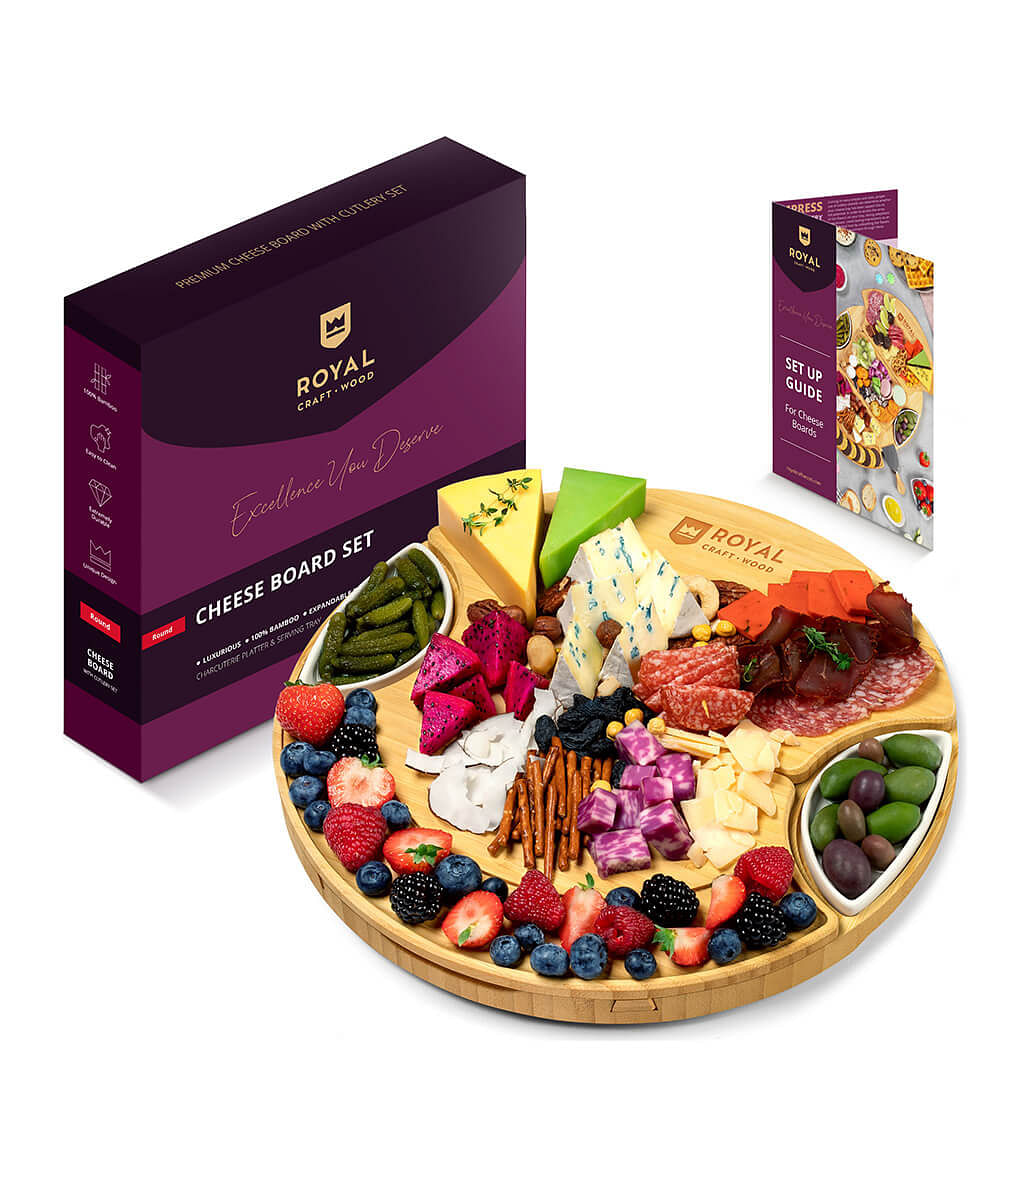 Premium Charcuterie & Cheese Board Set - Shop